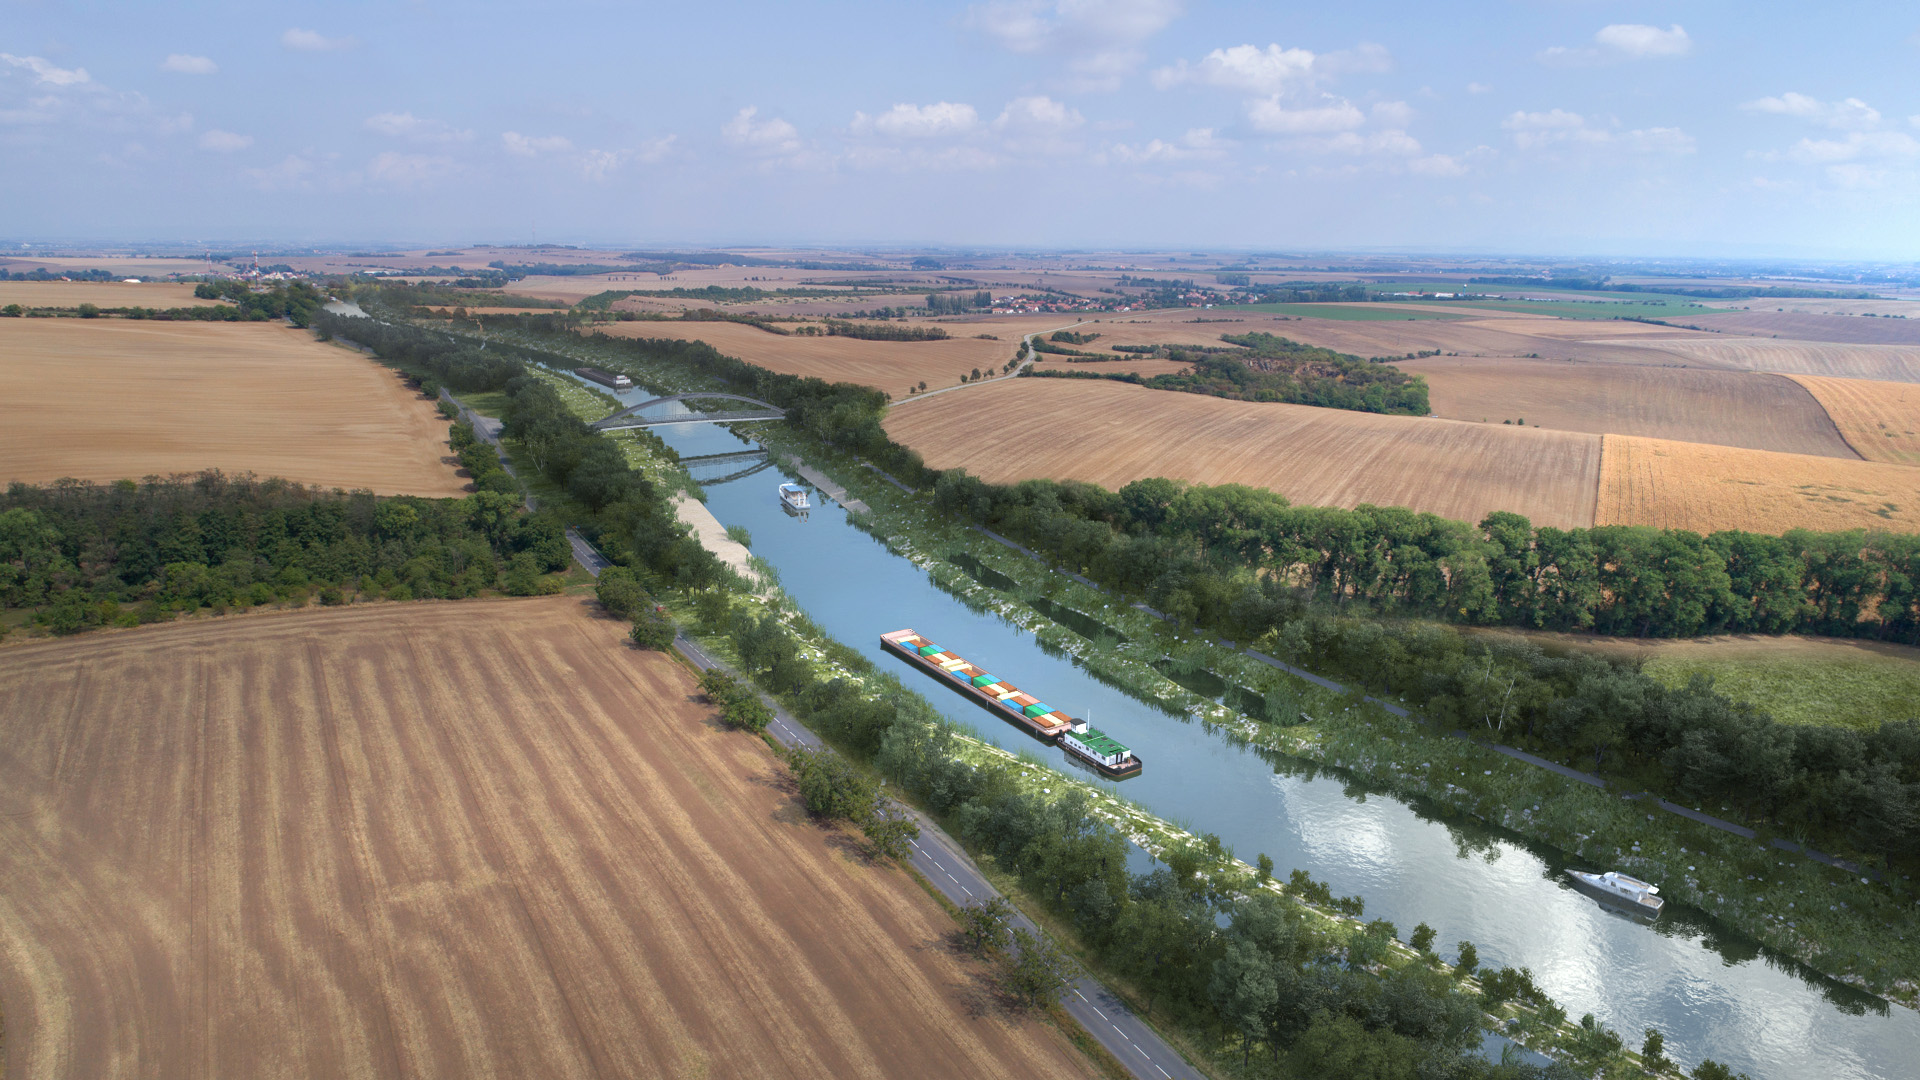 Vláda ukončila projekt vodního koridoru Dunaj-Odra-Labe, ruší územní rezervy